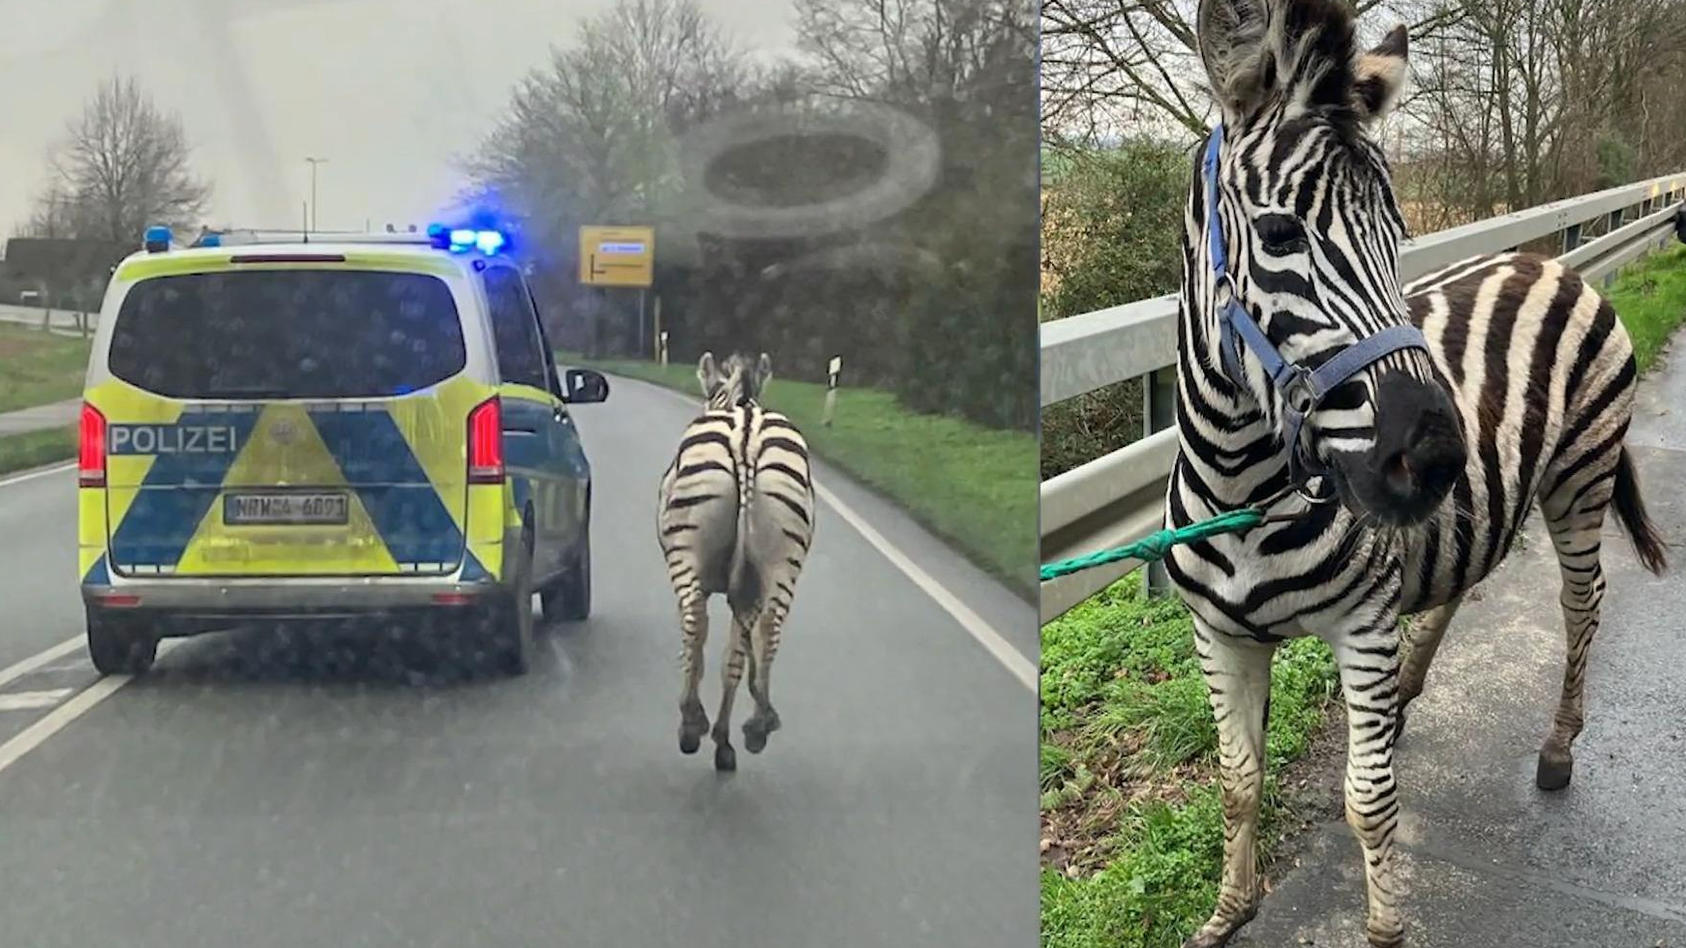 bei-geldern-am-niederrhein-polizei-fangt-ausgebrochene-zebras-ein